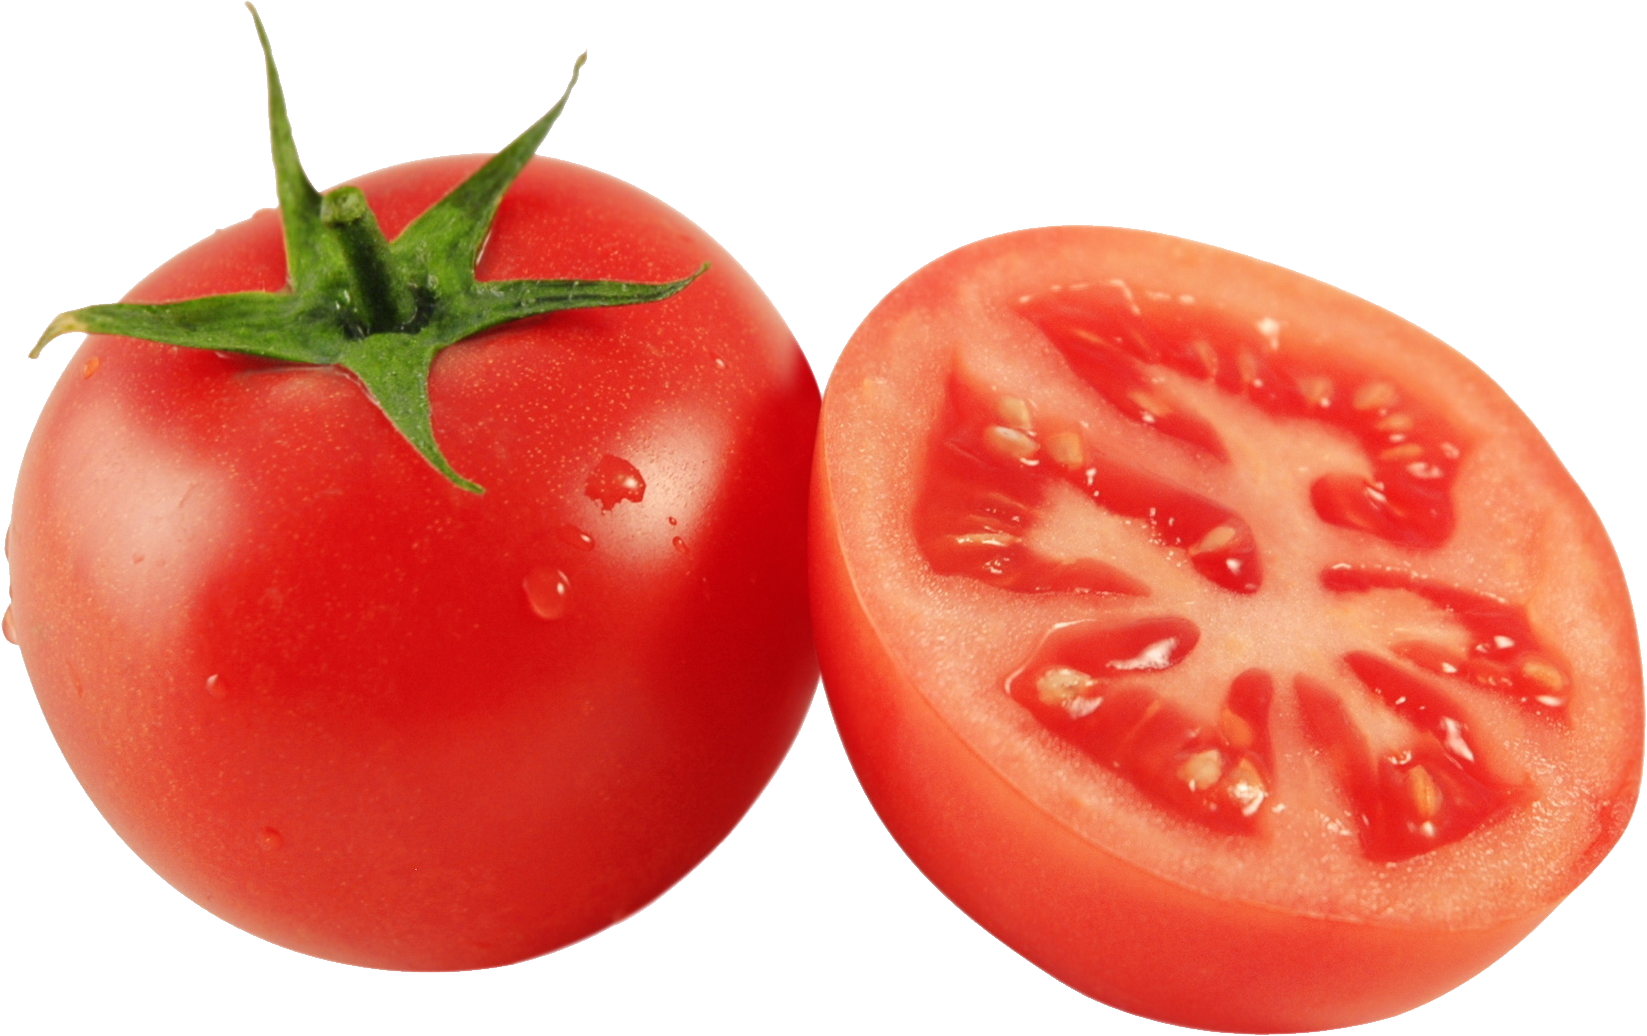 Cắt cà chua